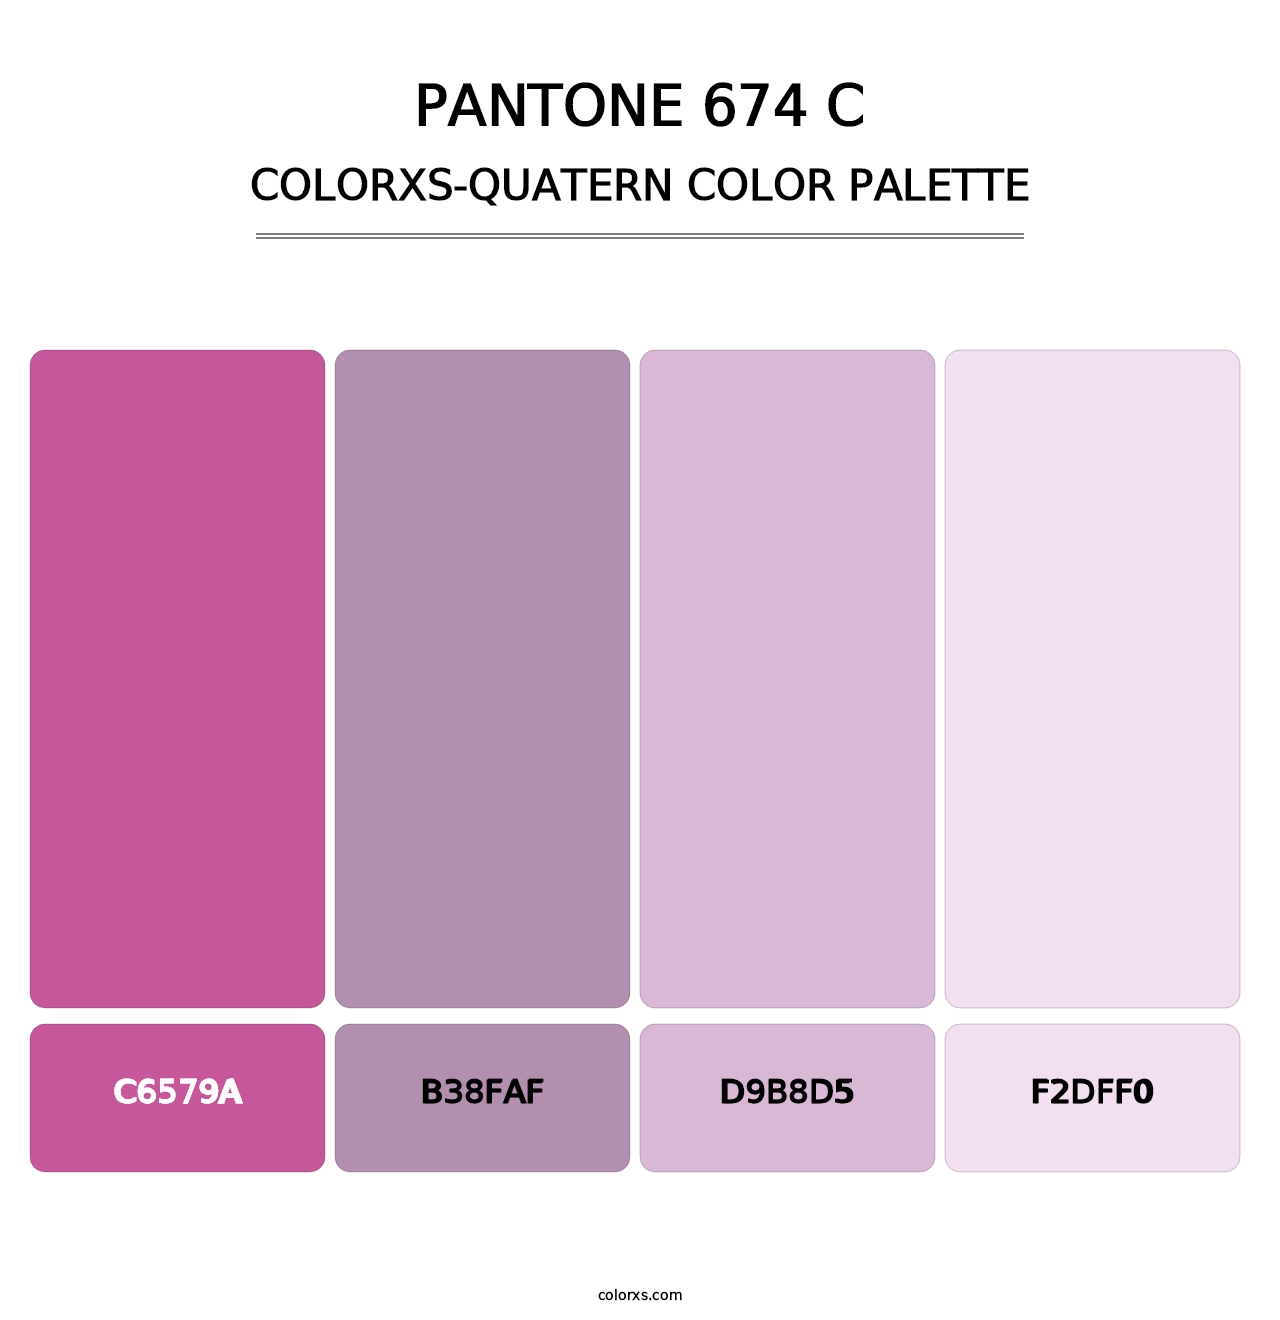 PANTONE 674 C - Colorxs Quatern Palette